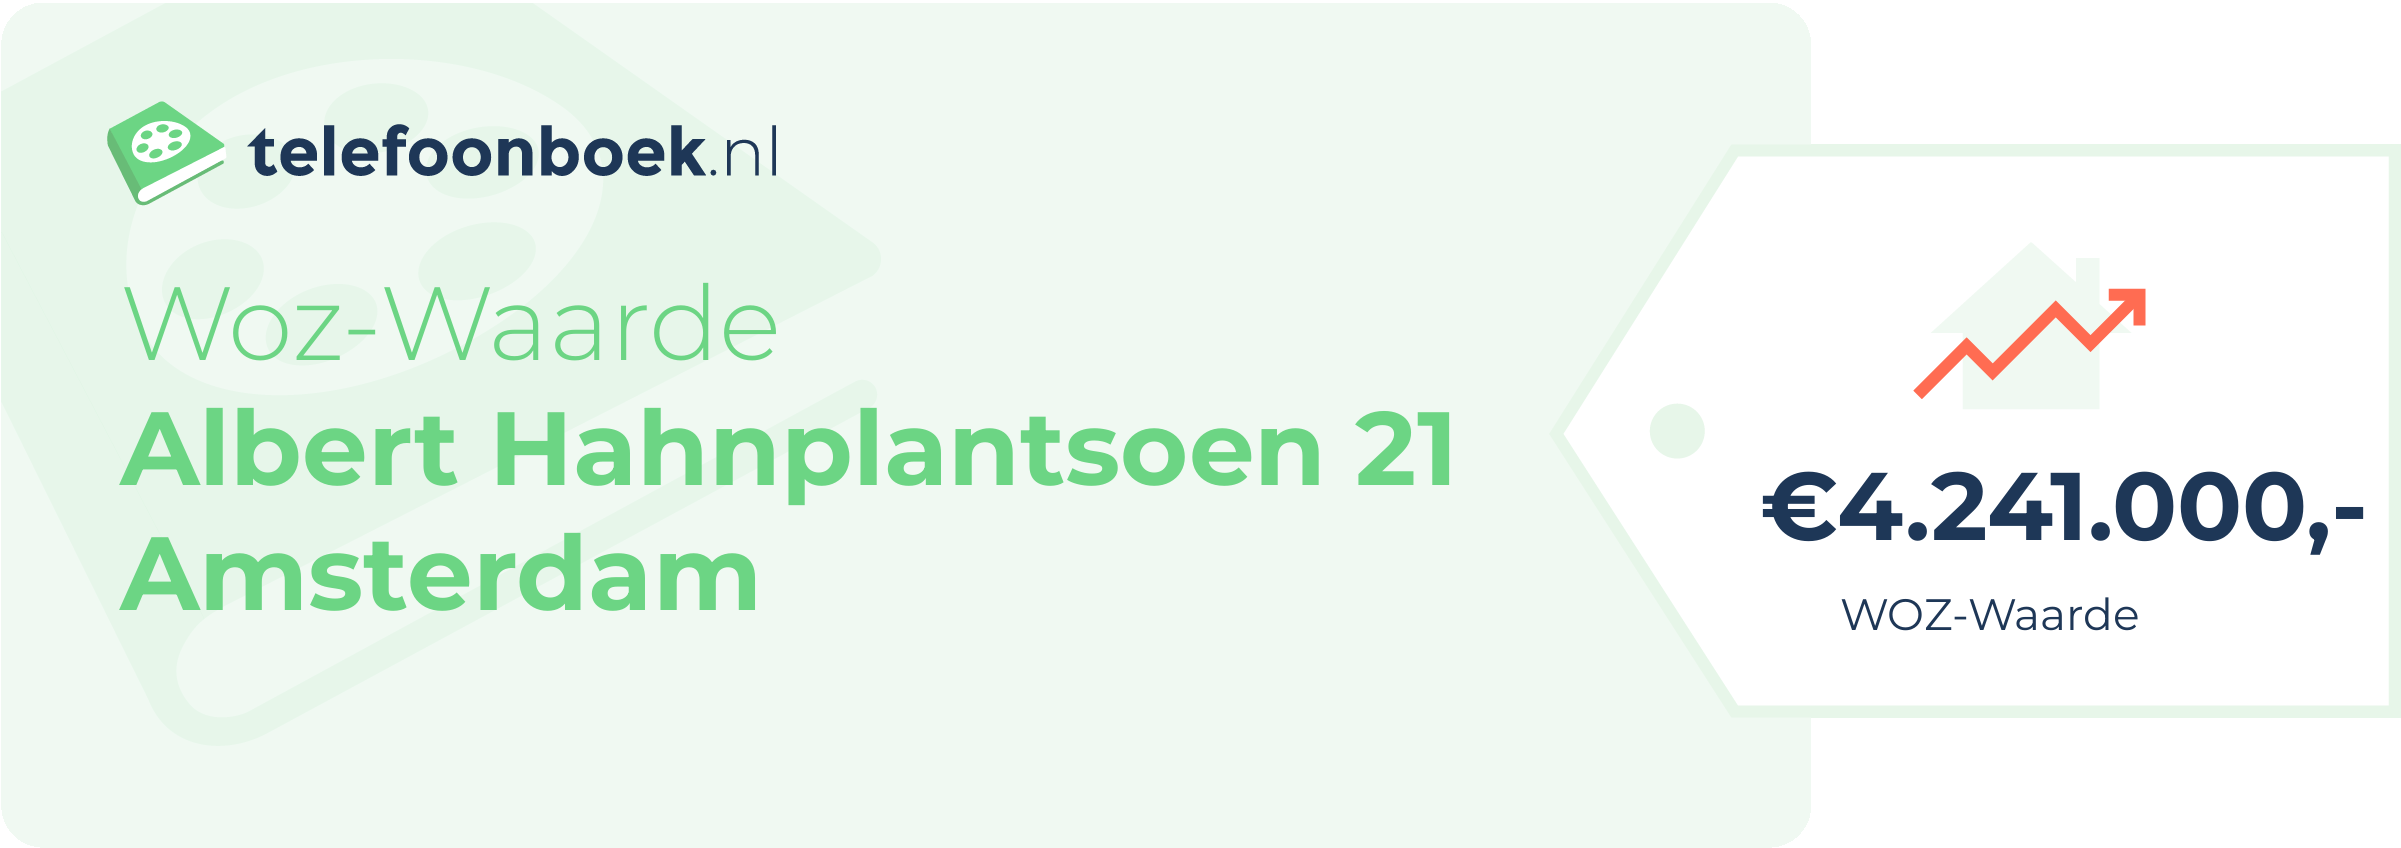 WOZ-waarde Albert Hahnplantsoen 21 Amsterdam